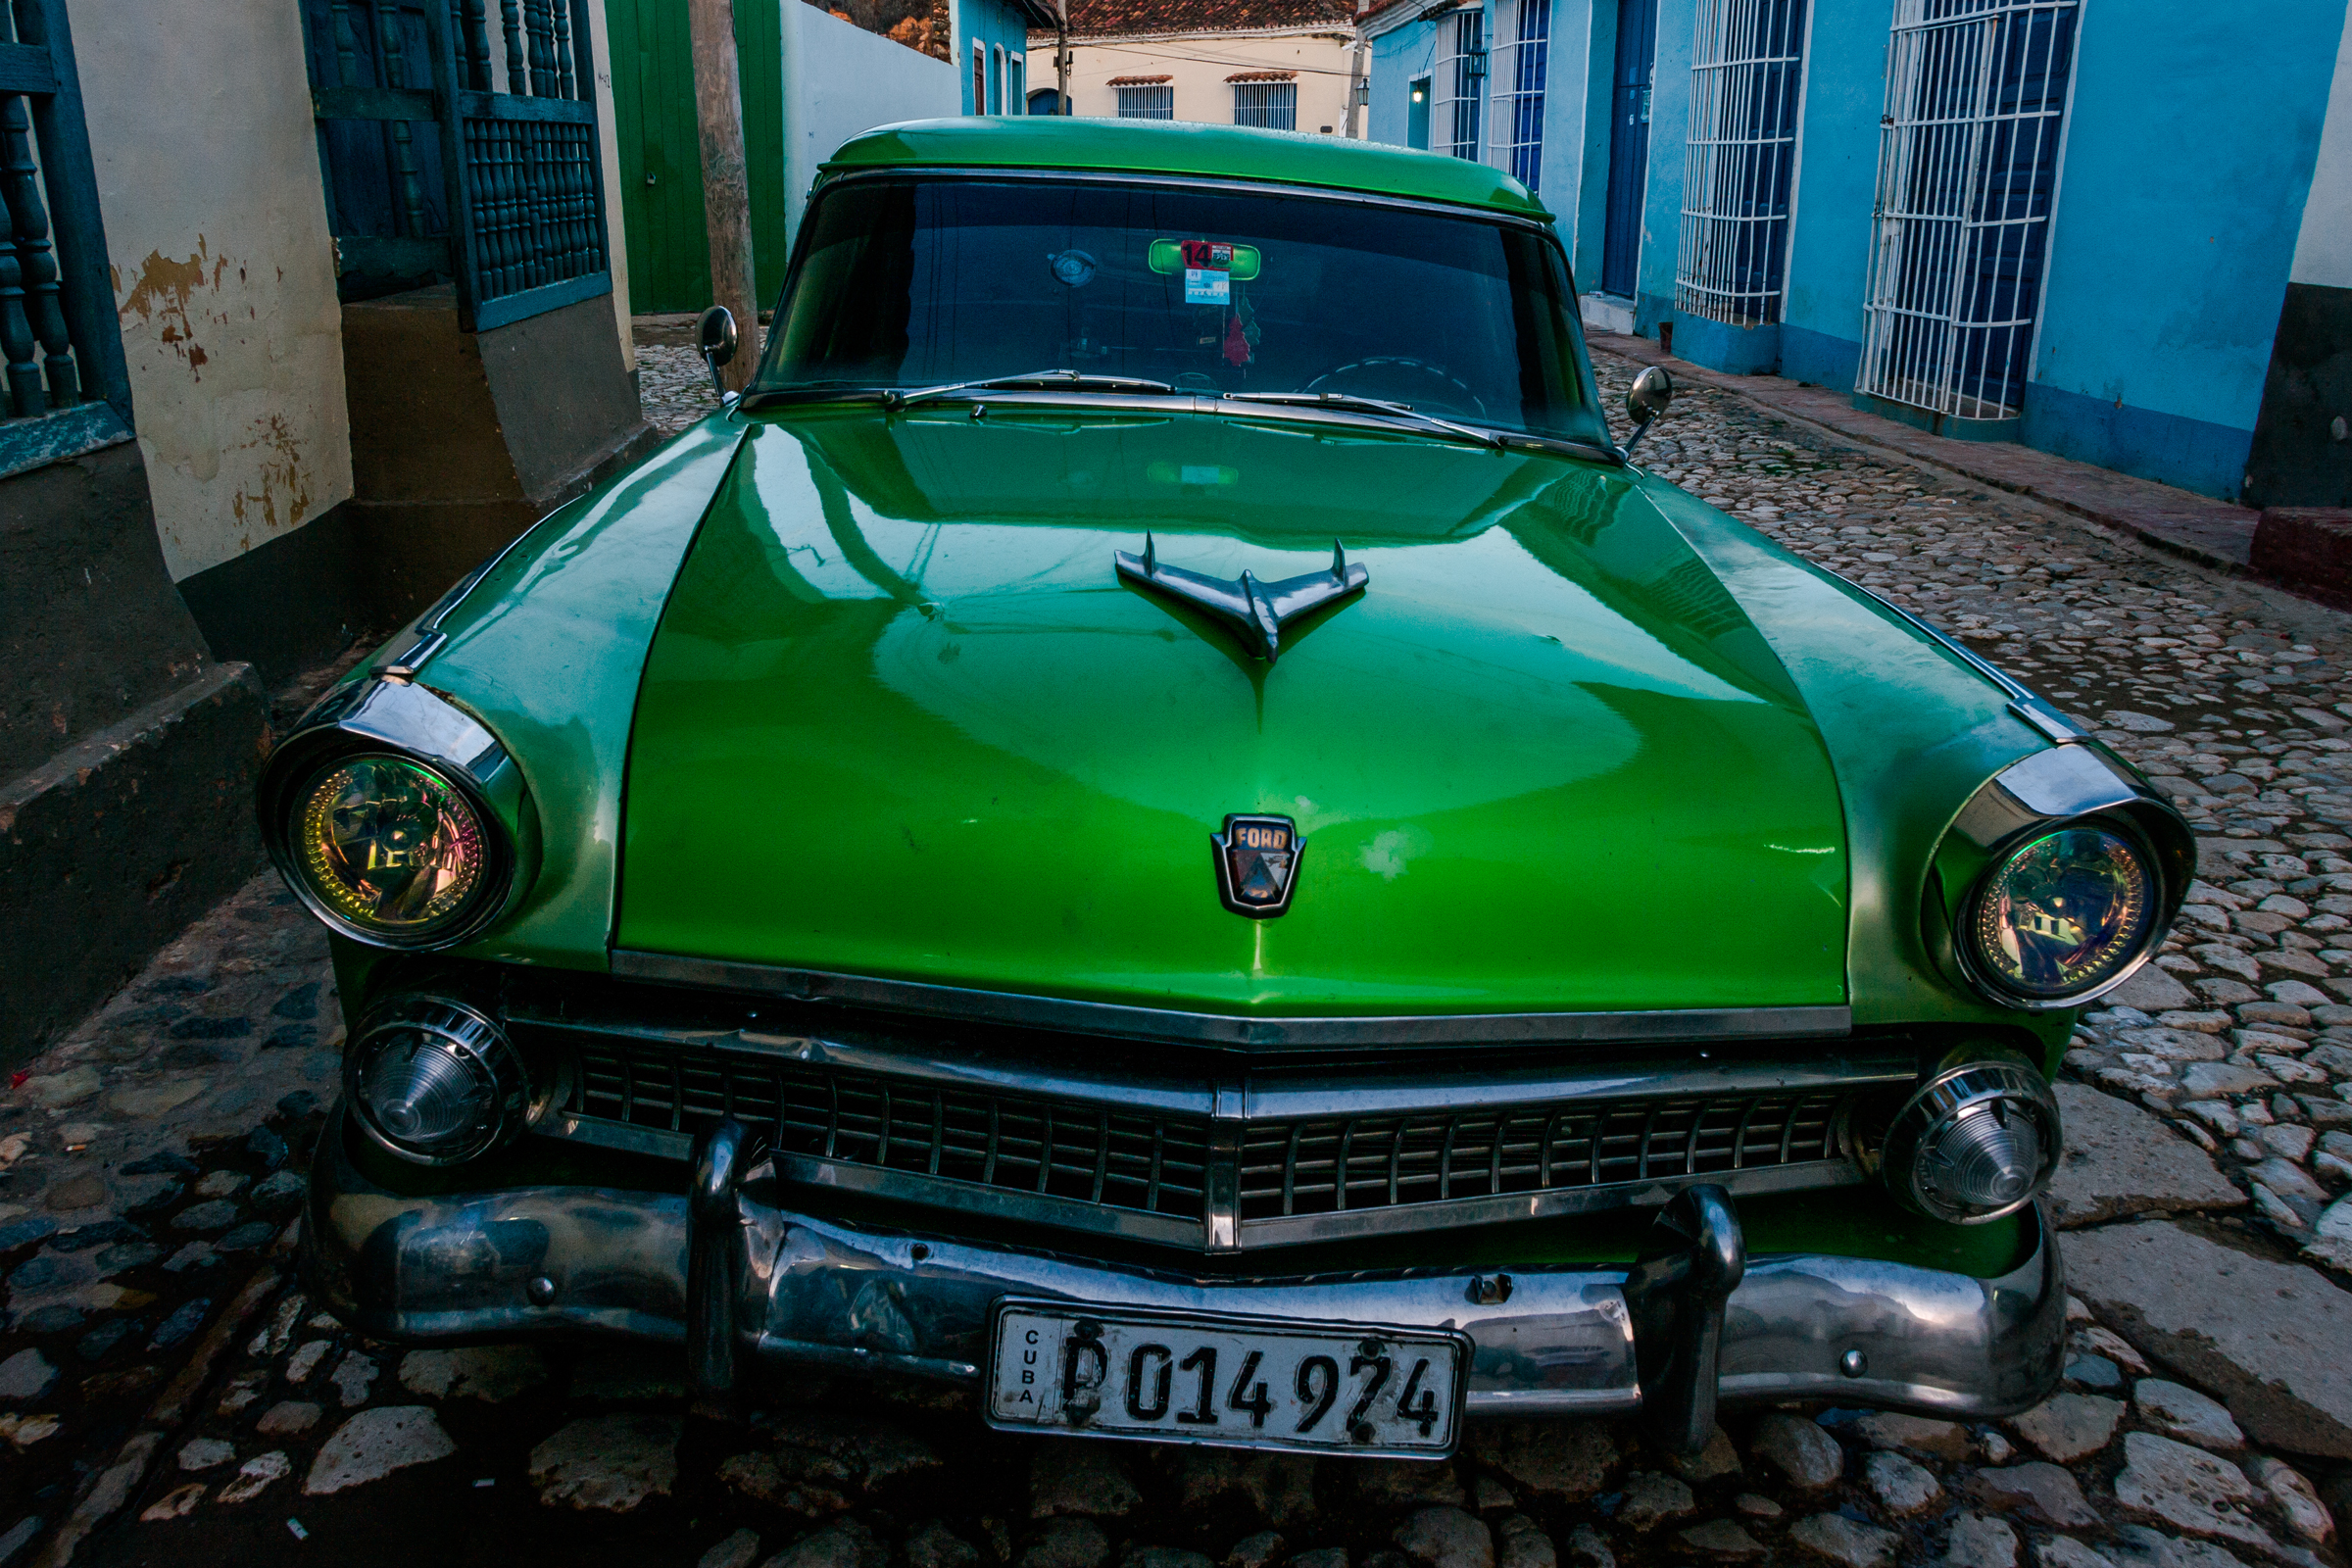  TRINIDAD, CUBA 